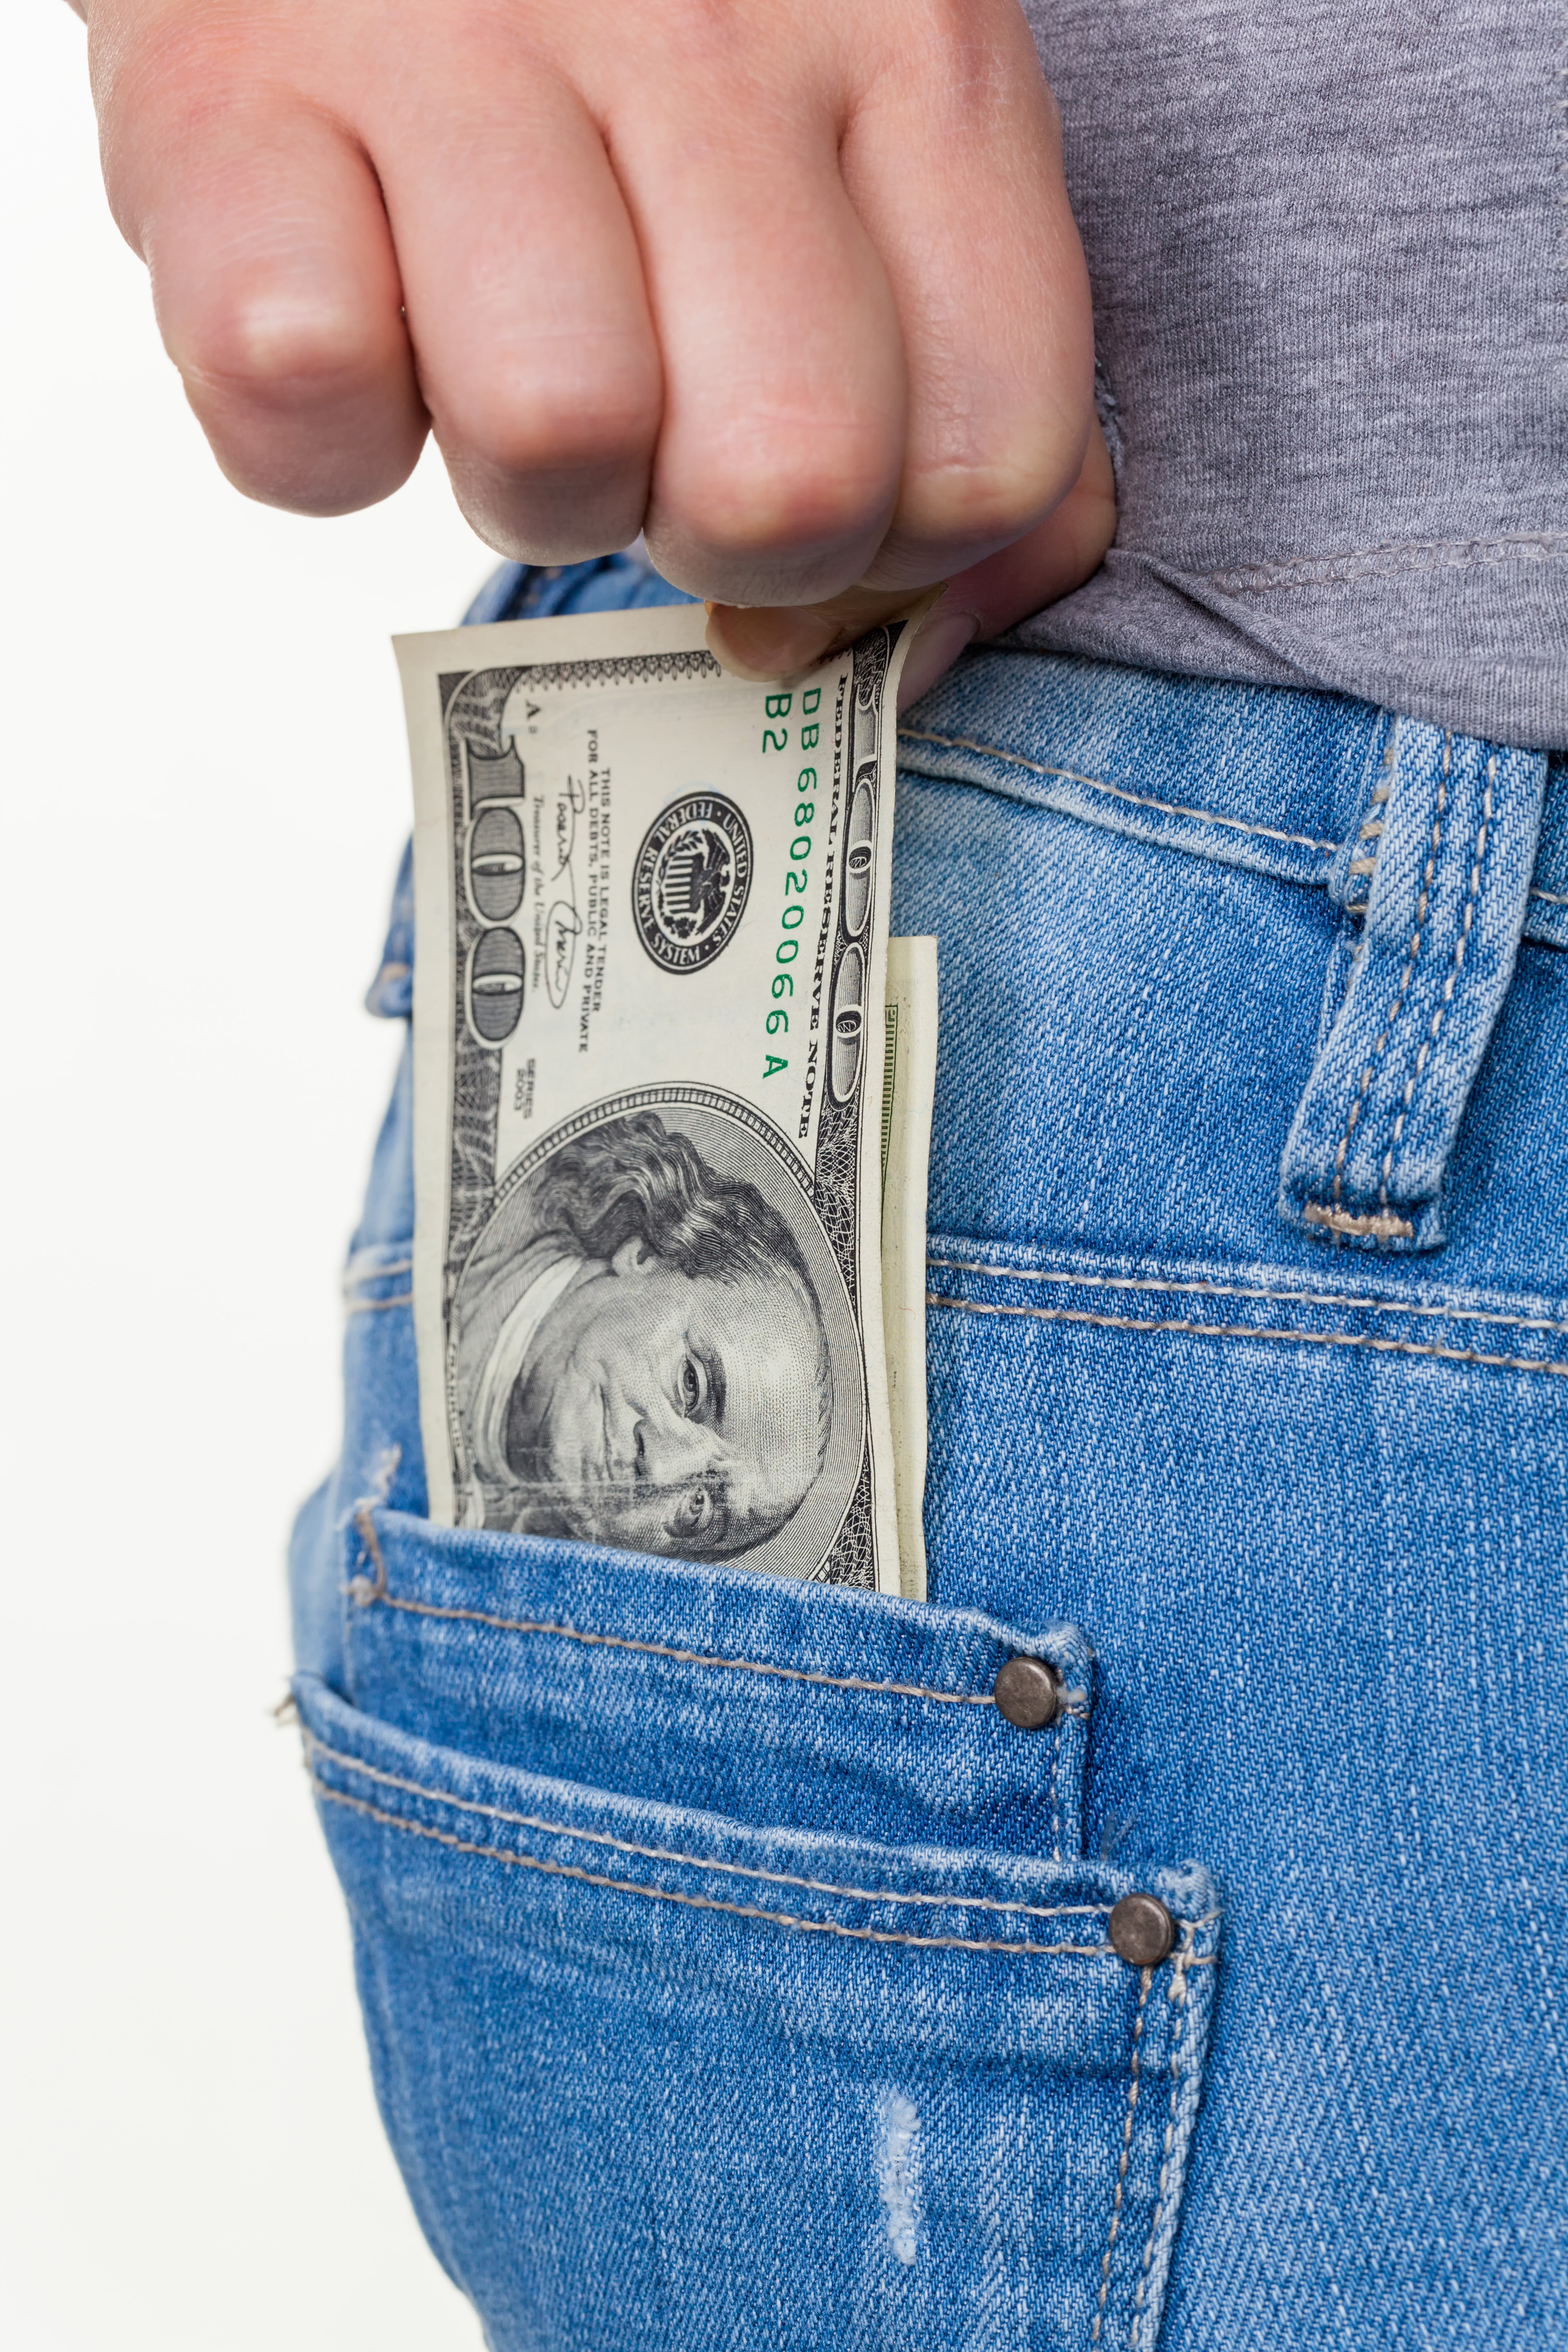 Die Hand einer jungen Frau zieht einen Dollar Geldschein aus der Tasche ihrer Jeans